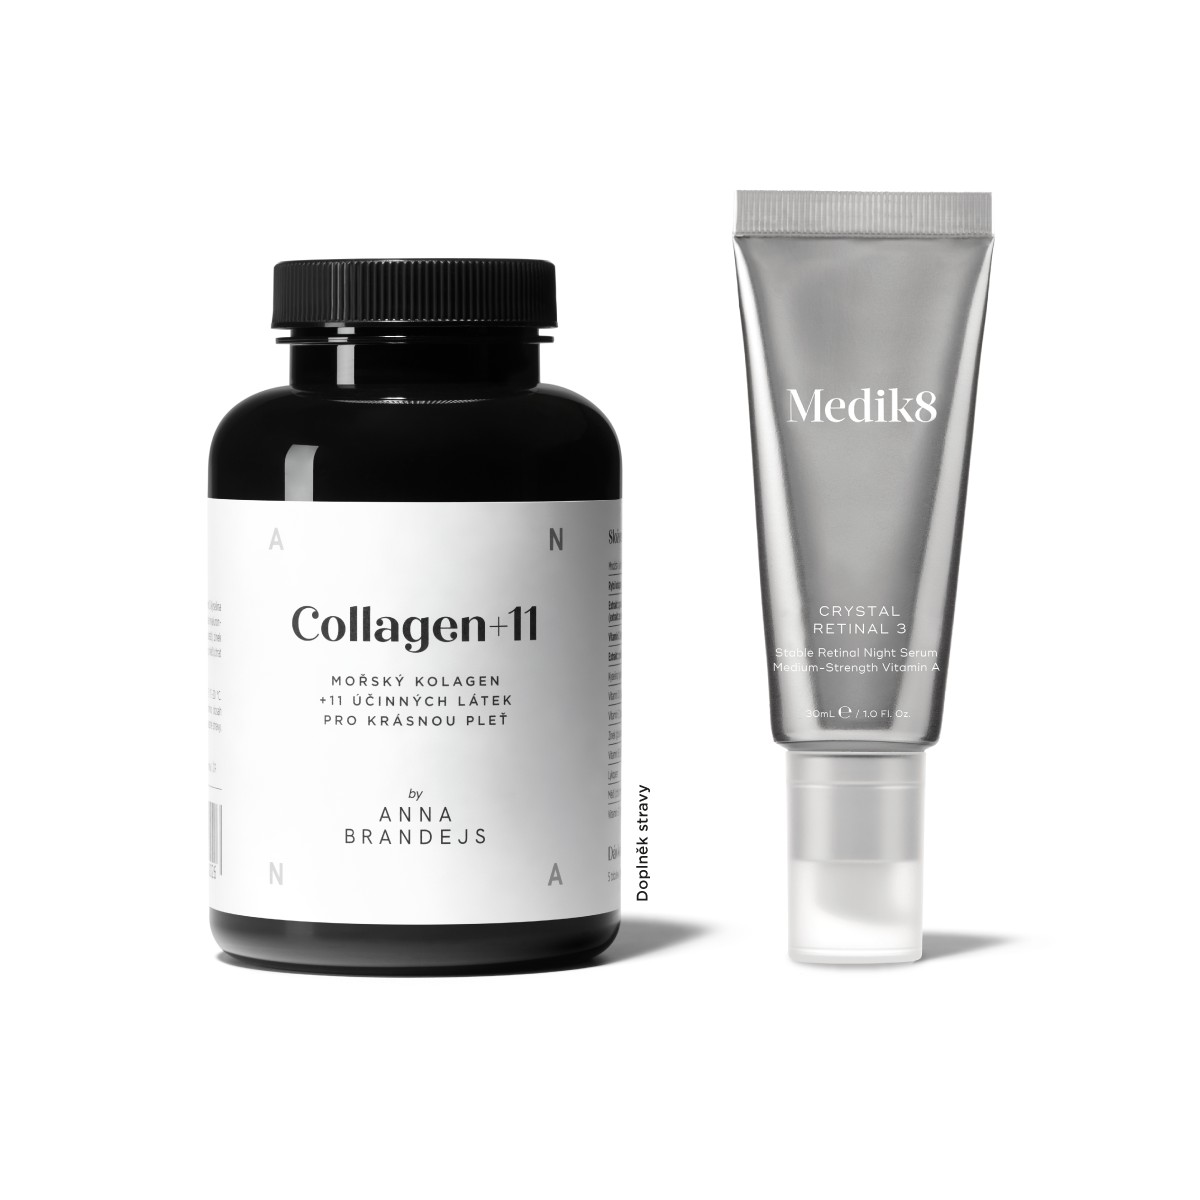 Collagen+11 by ANNA BRANDEJS & Crystal Retinal 6